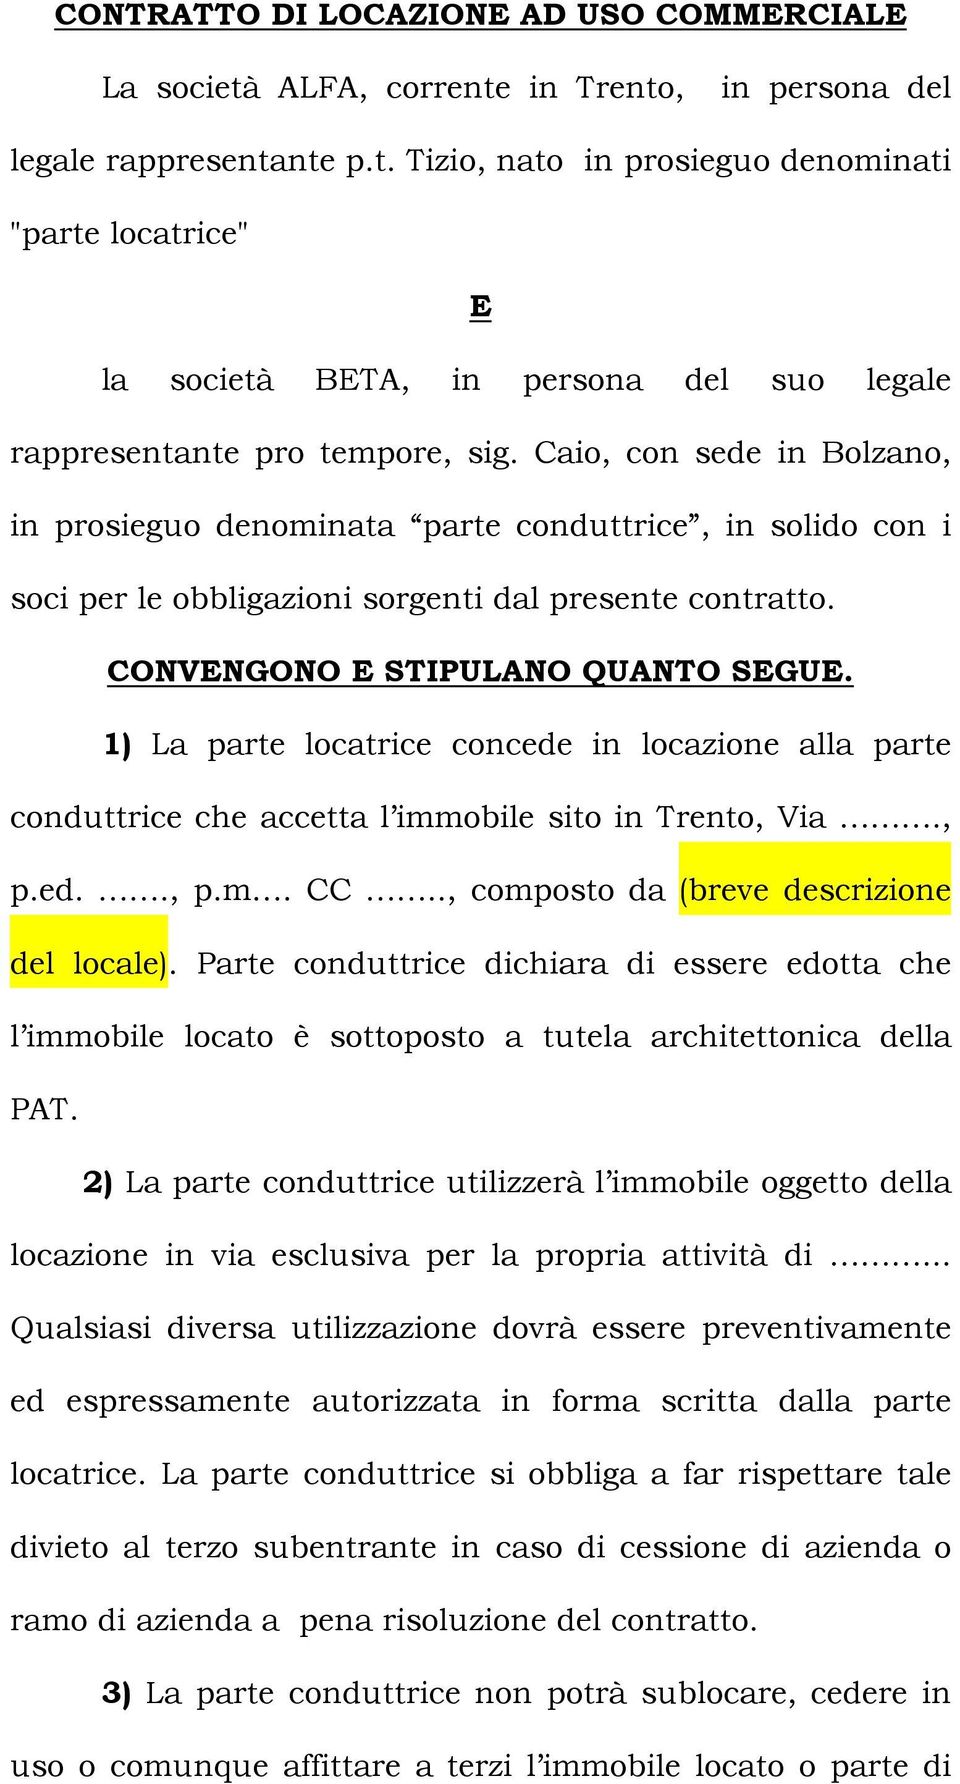 1) La parte locatrice concede in locazione alla parte conduttrice che accetta l immobile sito in Trento, Via., p.ed.., p.m. CC.., composto da (breve descrizione del locale).